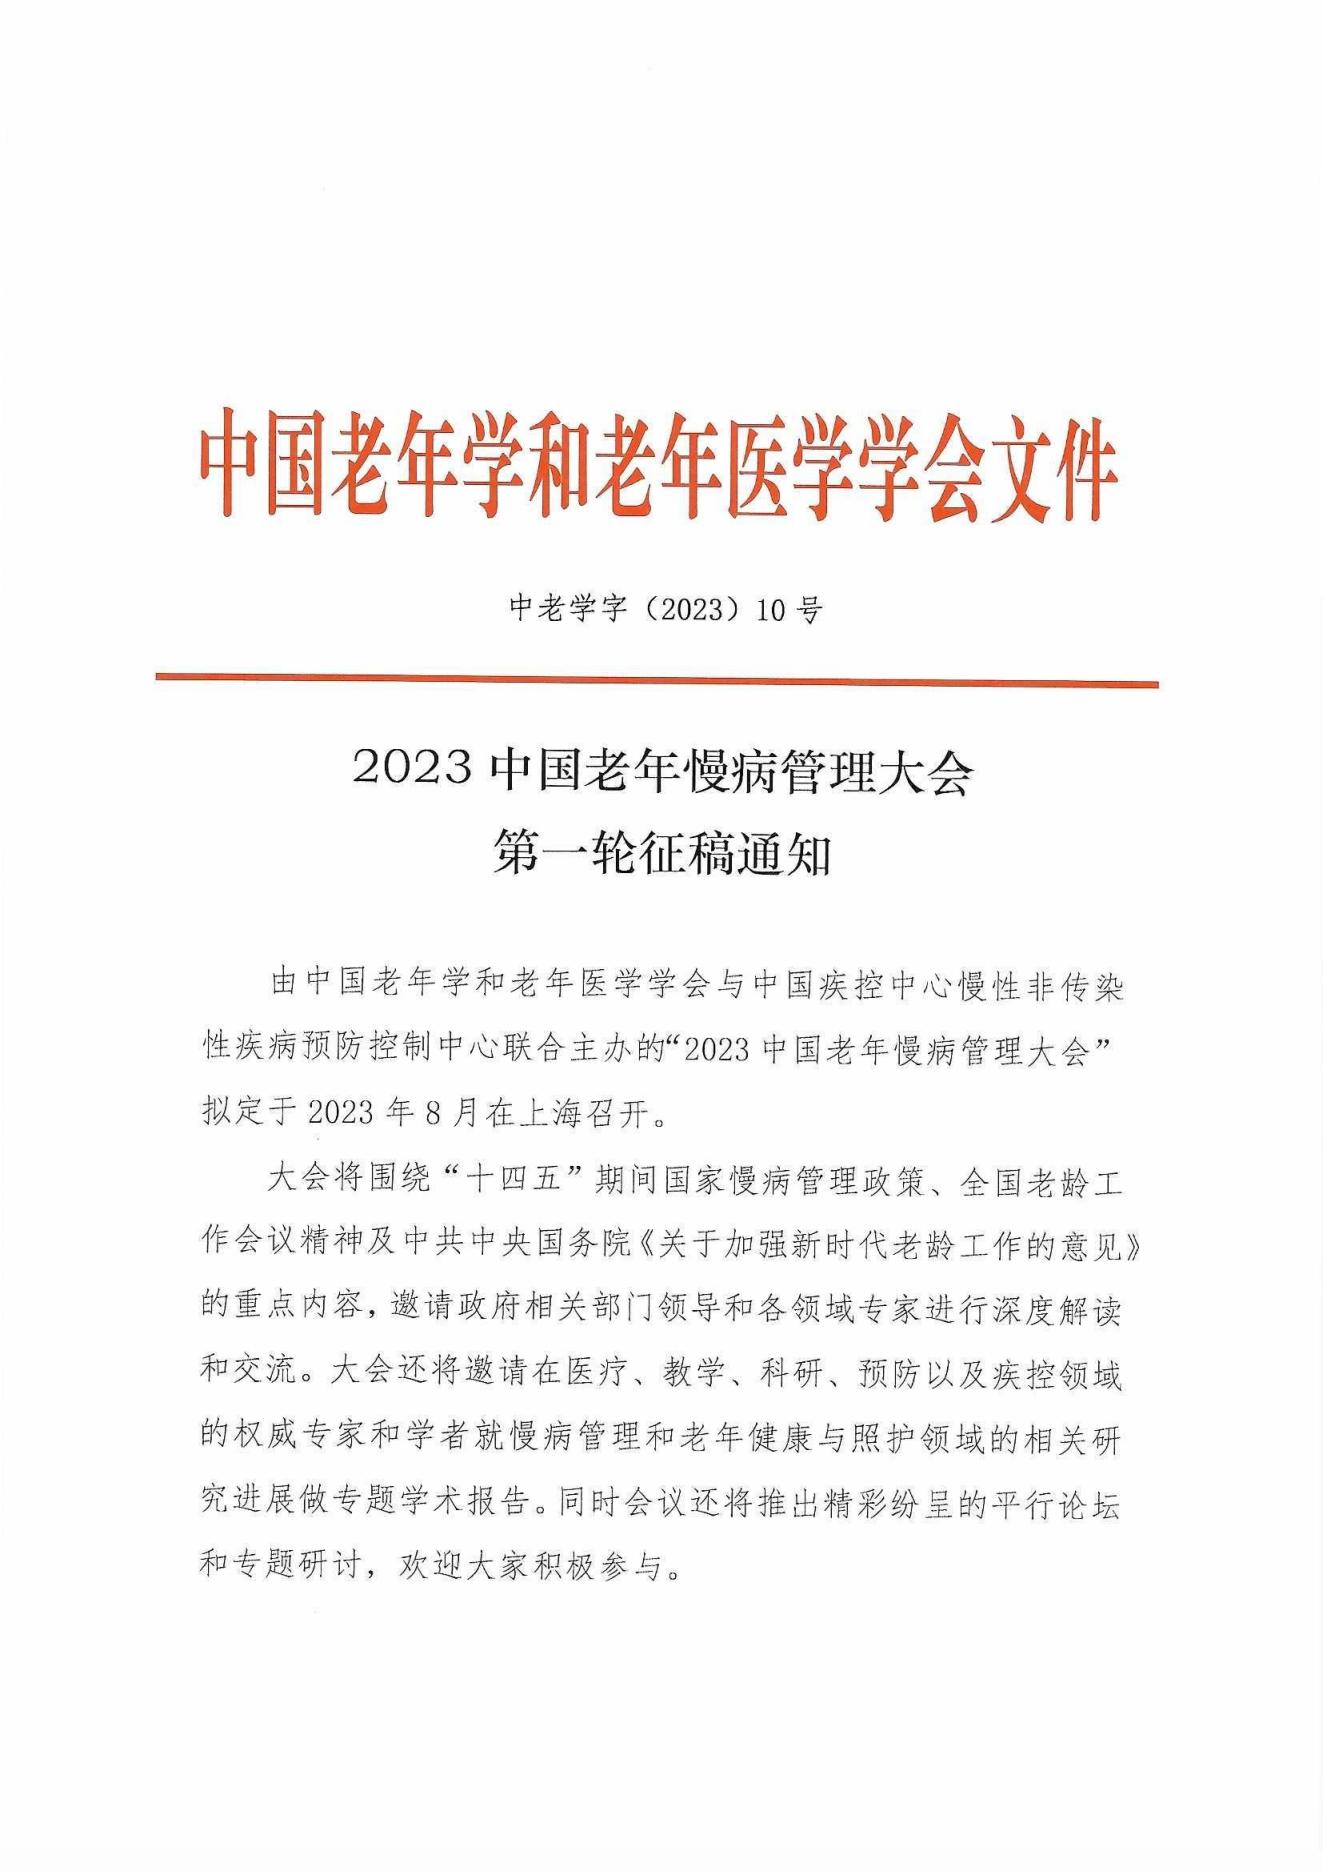 2023中国老年慢病管理大会第一轮征稿通知_00.jpg